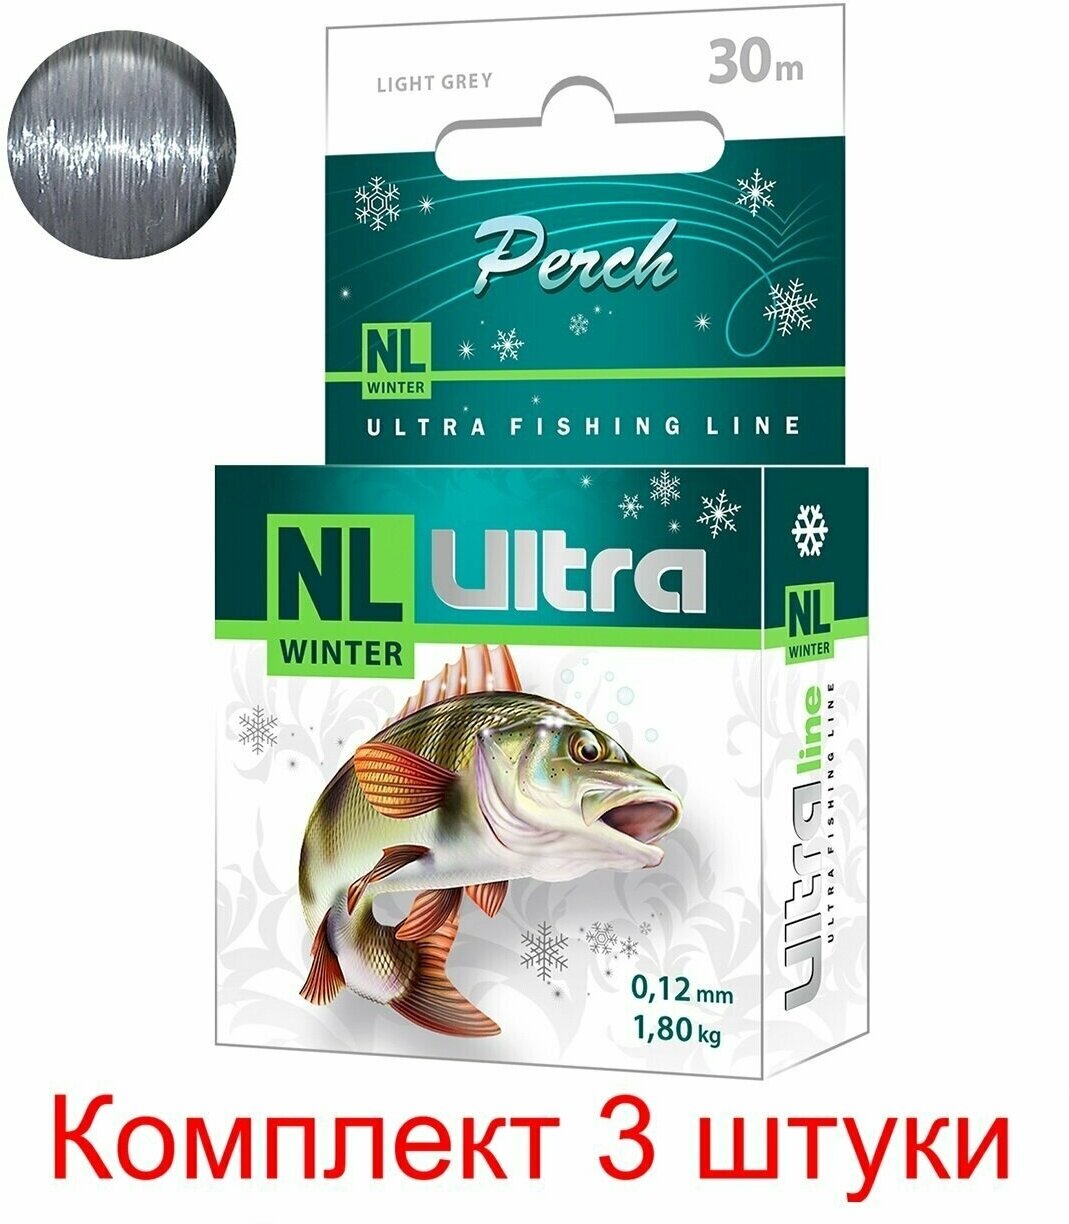 Леска зимняя для рыбалки AQUA NL ULTRA PERCH (Окунь) 30m 0,12mm, цвет - светло-серый, test - 1,80kg ( 3 штуки )